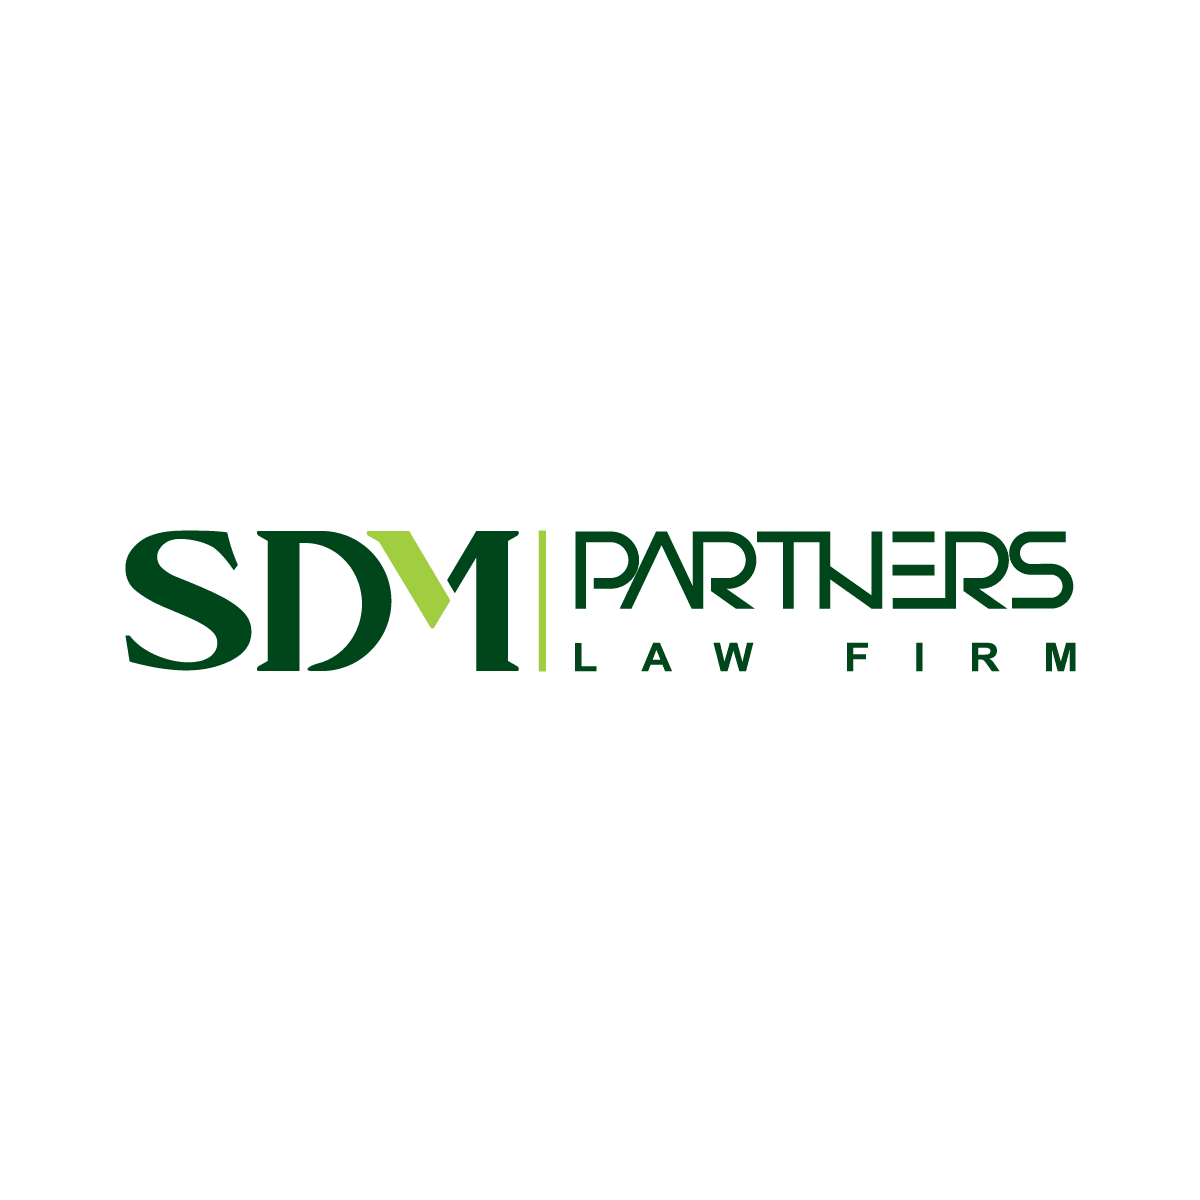 SDM Partners